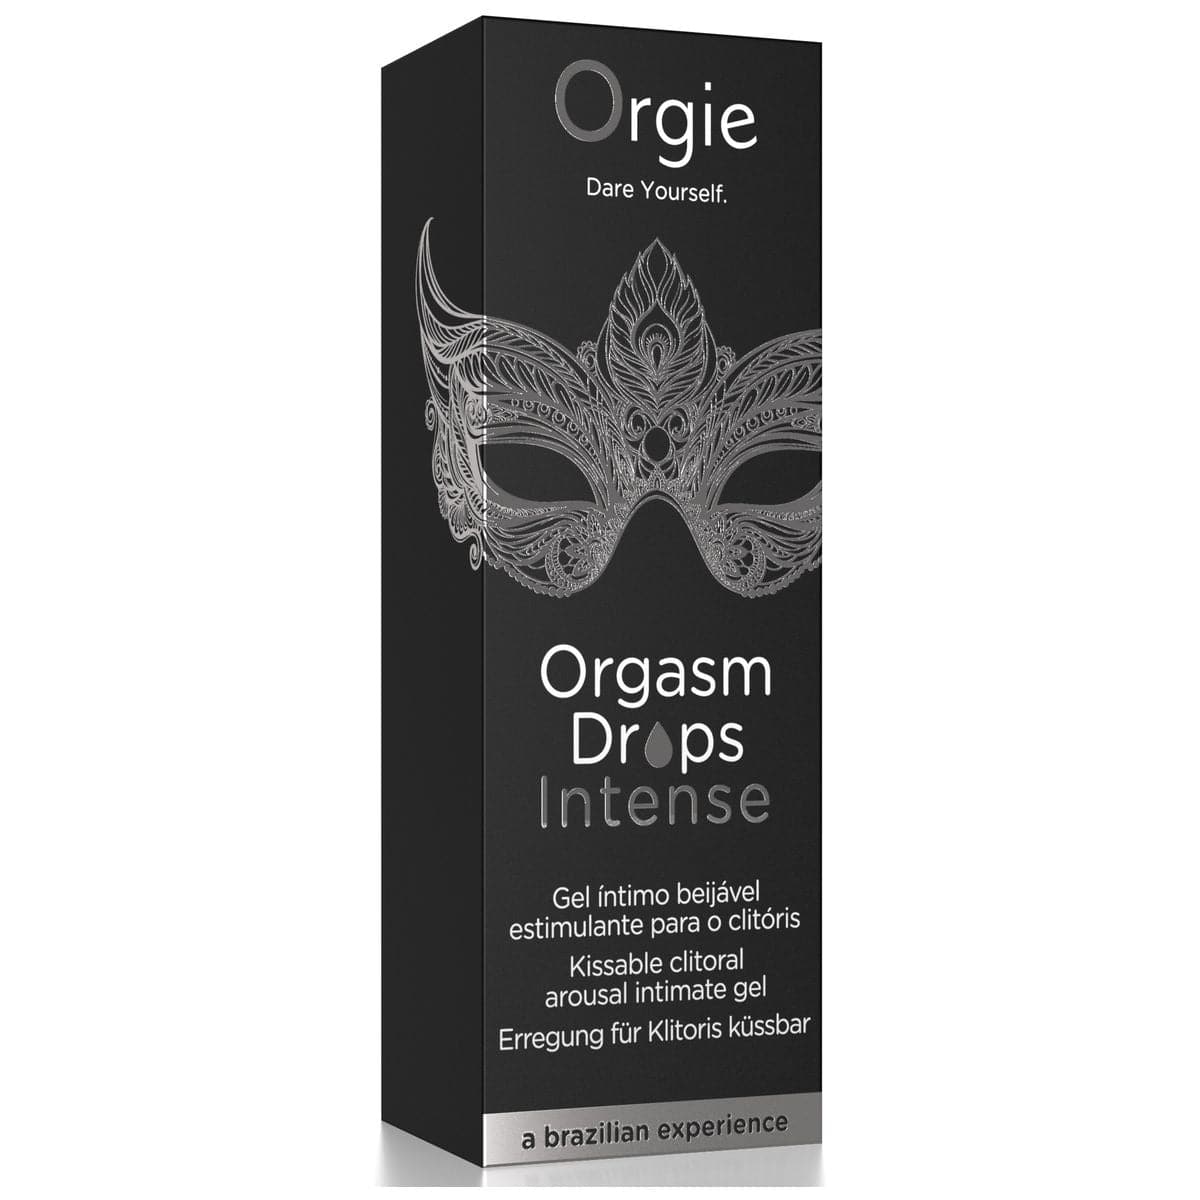 Estimulante Orgasm Drops Intense 30ml - Efeito Calor e Formigueiro Intenso, Sabor Maça  Orgie   